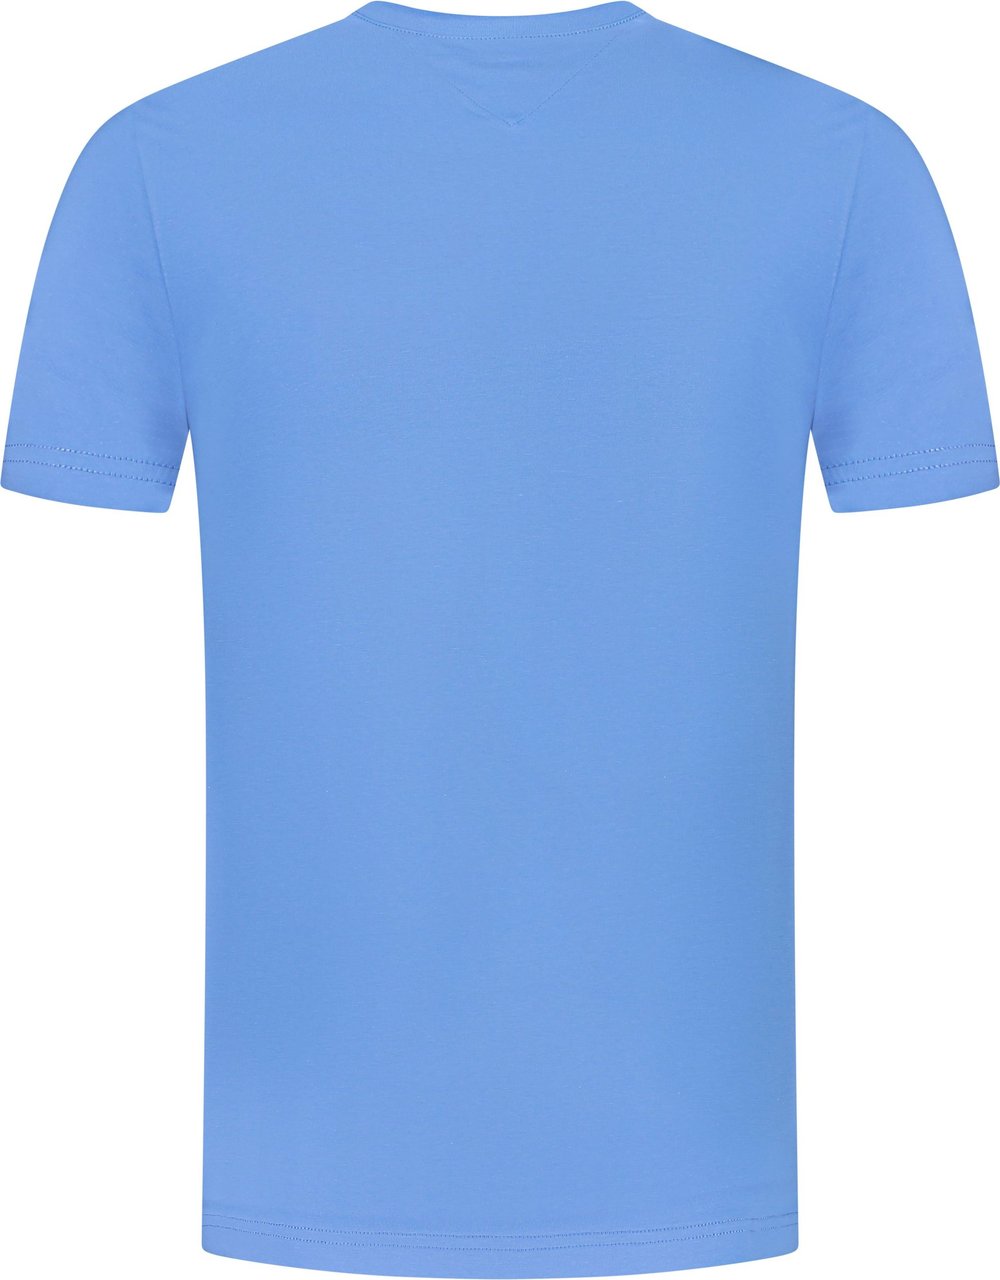 Tommy Hilfiger T-shirt Blauw Blauw